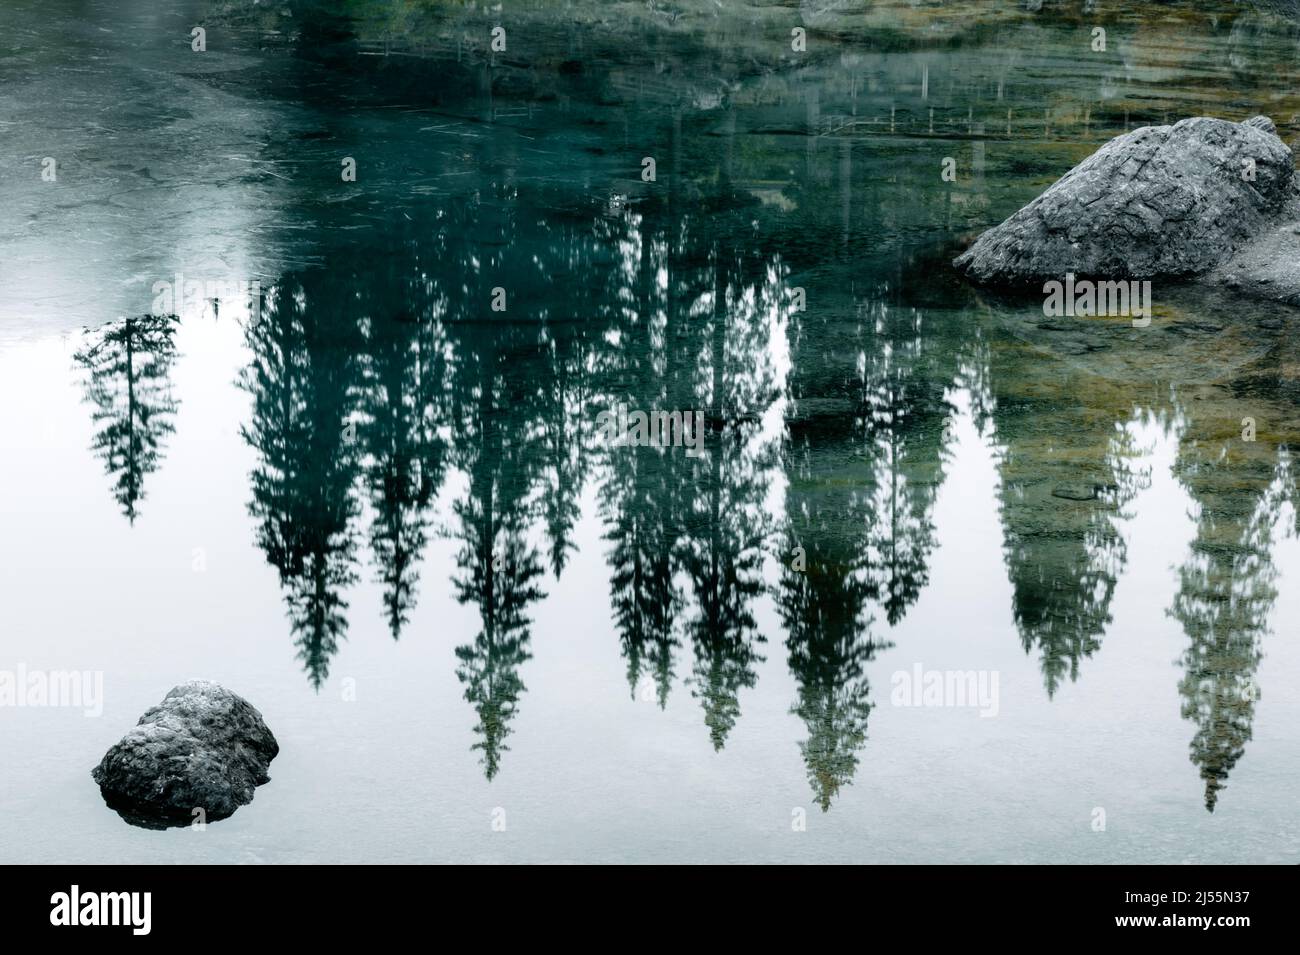 Eaux turquoises gelées du lac Carezza (Karersee) dans les Dolomites de l'Ouest, en Italie. Belle vue rapprochée avec reflets de pierres et de pins. Montagnes de dolomie, Tyrol du Sud, Italie. Photographie de paysage Banque D'Images